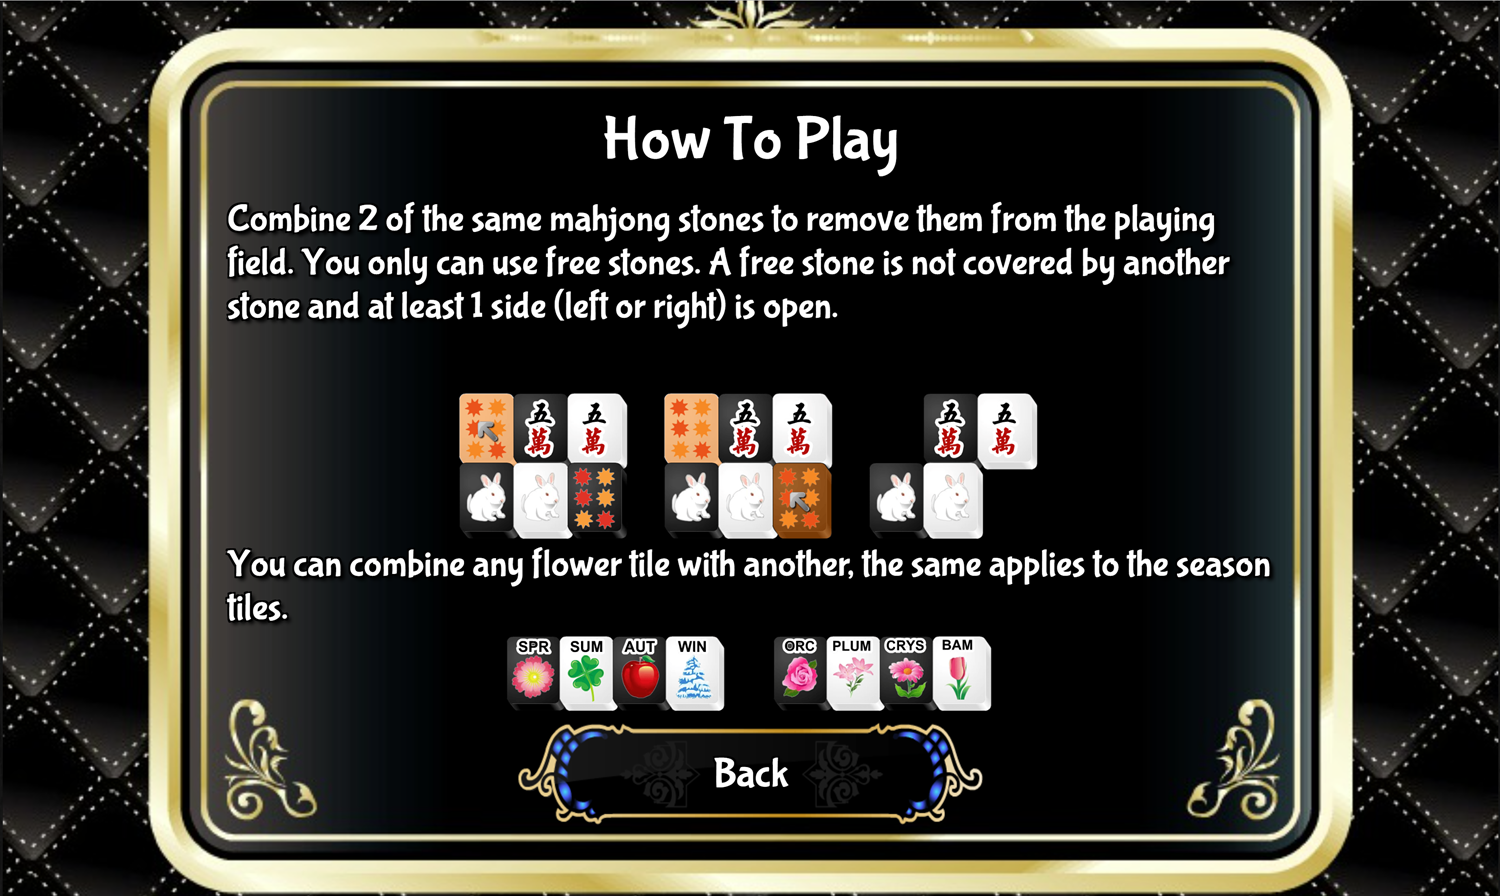 Black and White Mahjong 2 Game How to Play Screen Screenshot.